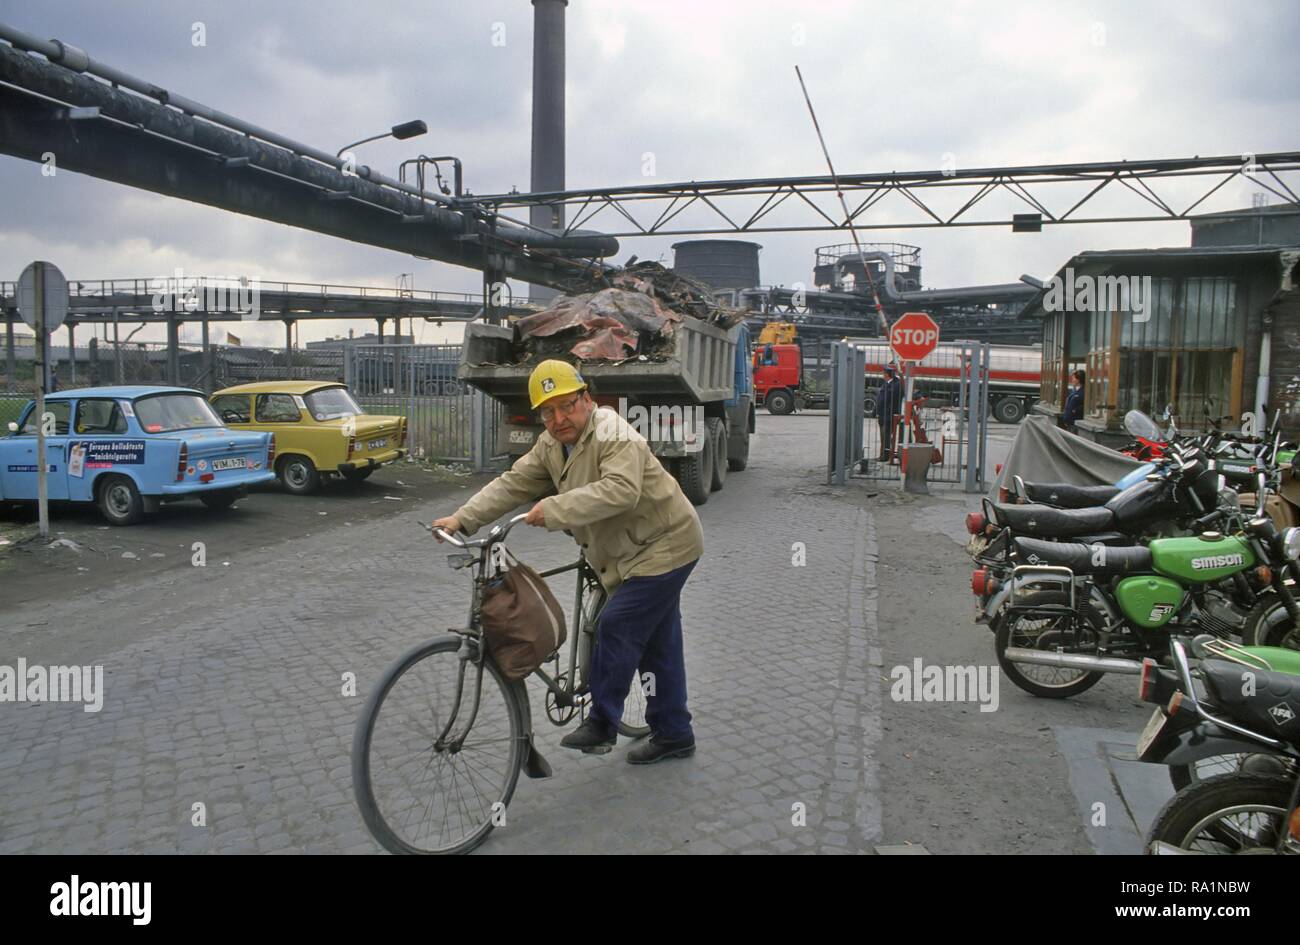 Allemagne, sortie des ouvriers de l'industrie chimique en Bu-Na la ville de Halle immédiatement après la réunification entre le DDR et la République fédérale d'Allemagne (mars 1991) Banque D'Images